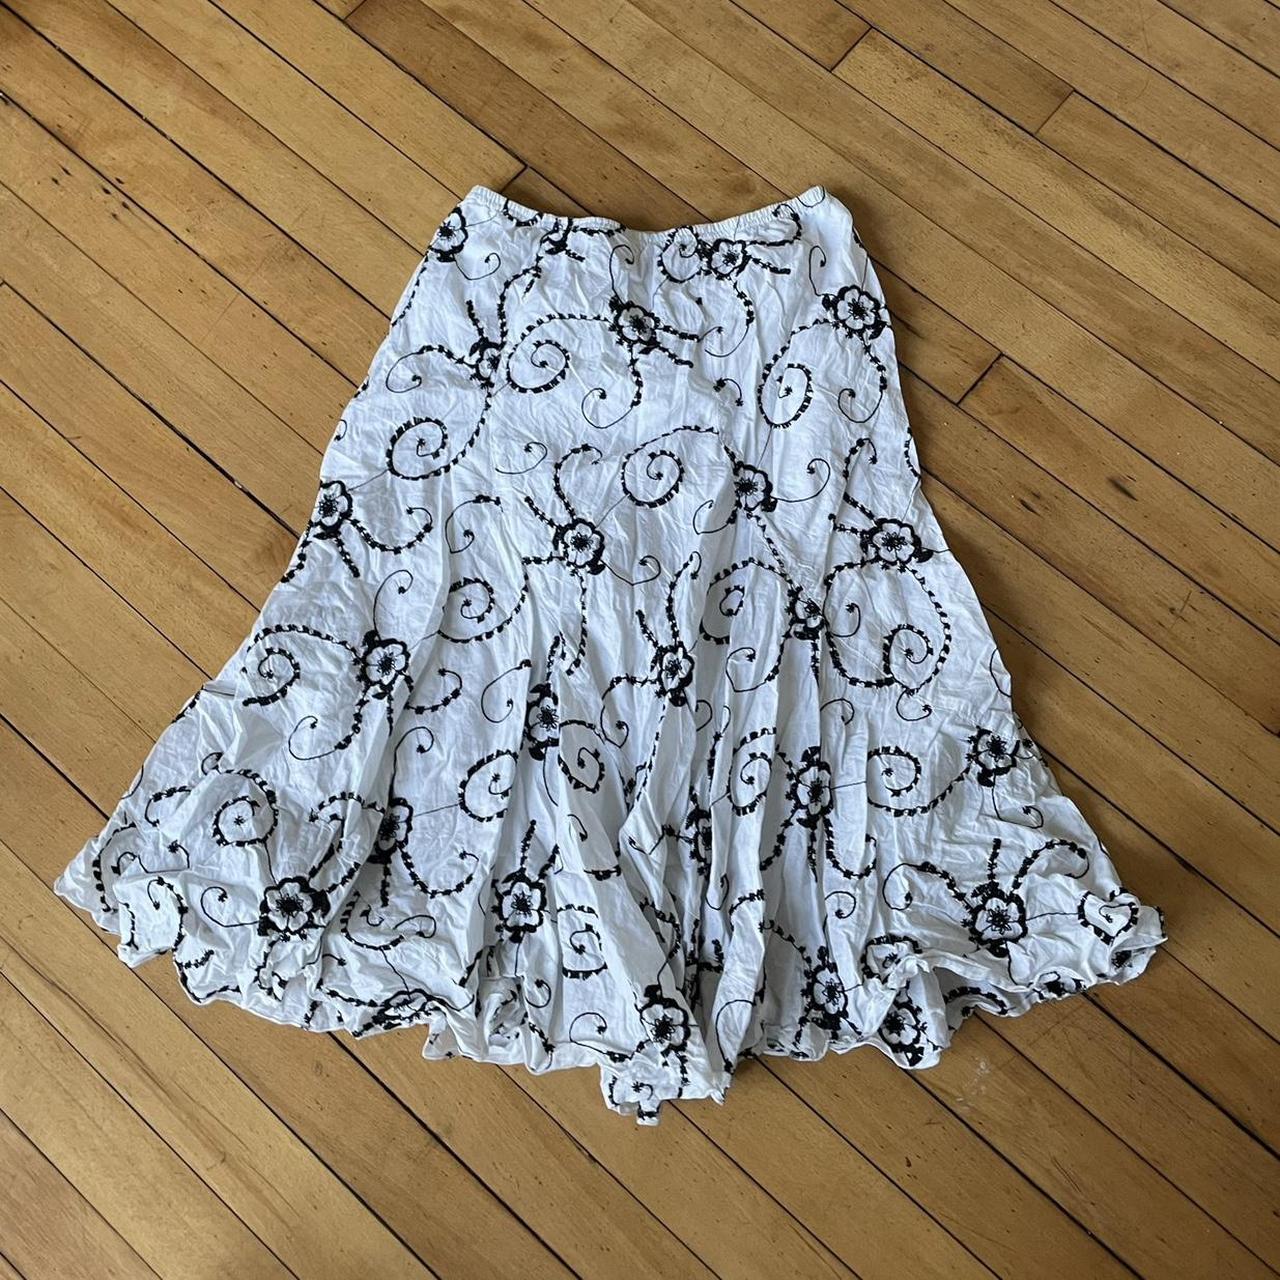 white black embroidered floral midi skirt brand:... - Depop